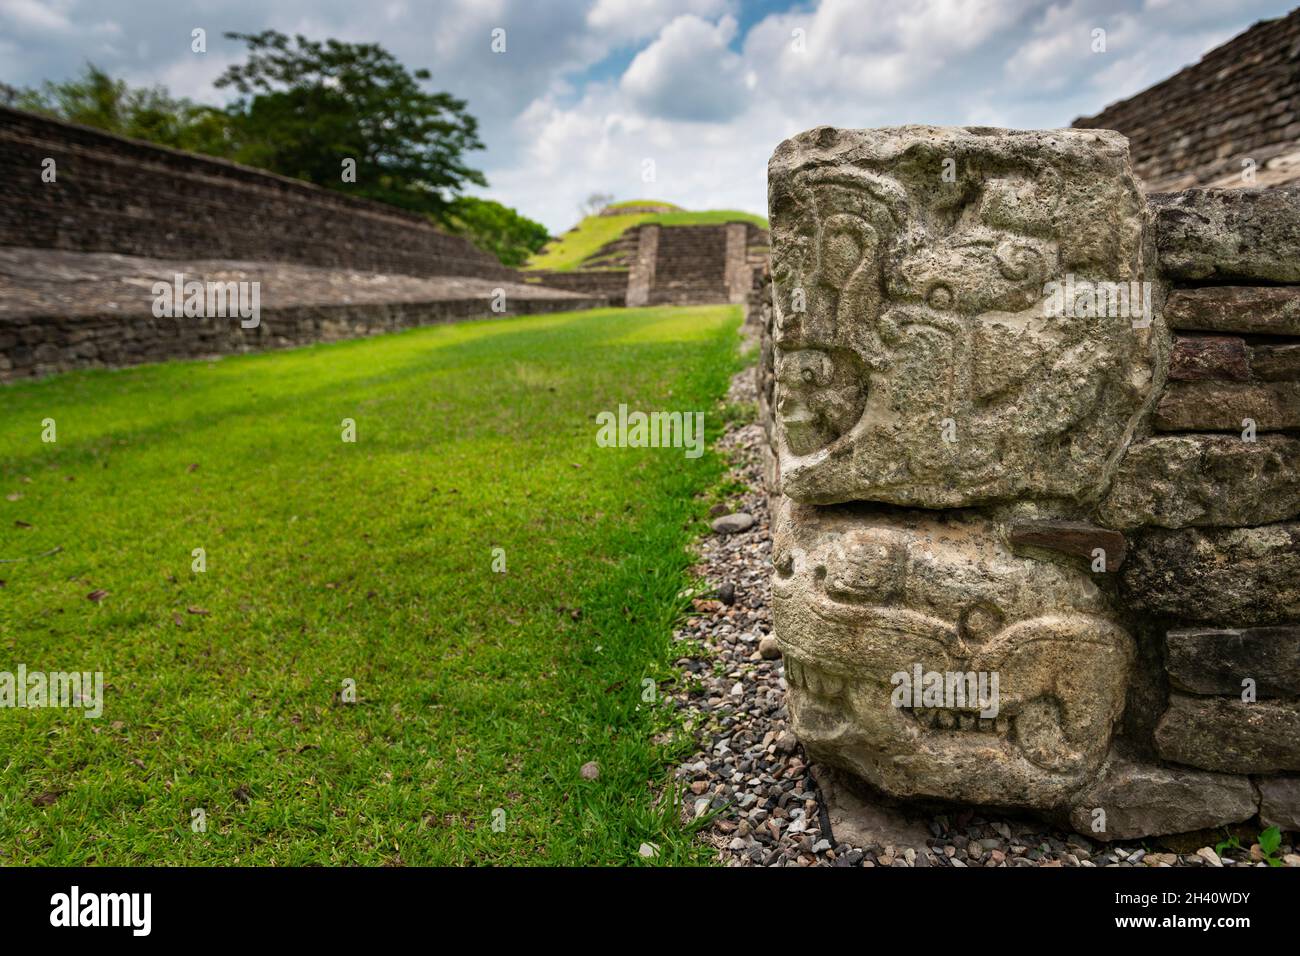 Detalle de un tallado bajo relieve en un campo de béisbol en el yacimiento arqueológico DE EL Tajin, en Papantla, Veracruz, México. Foto de stock